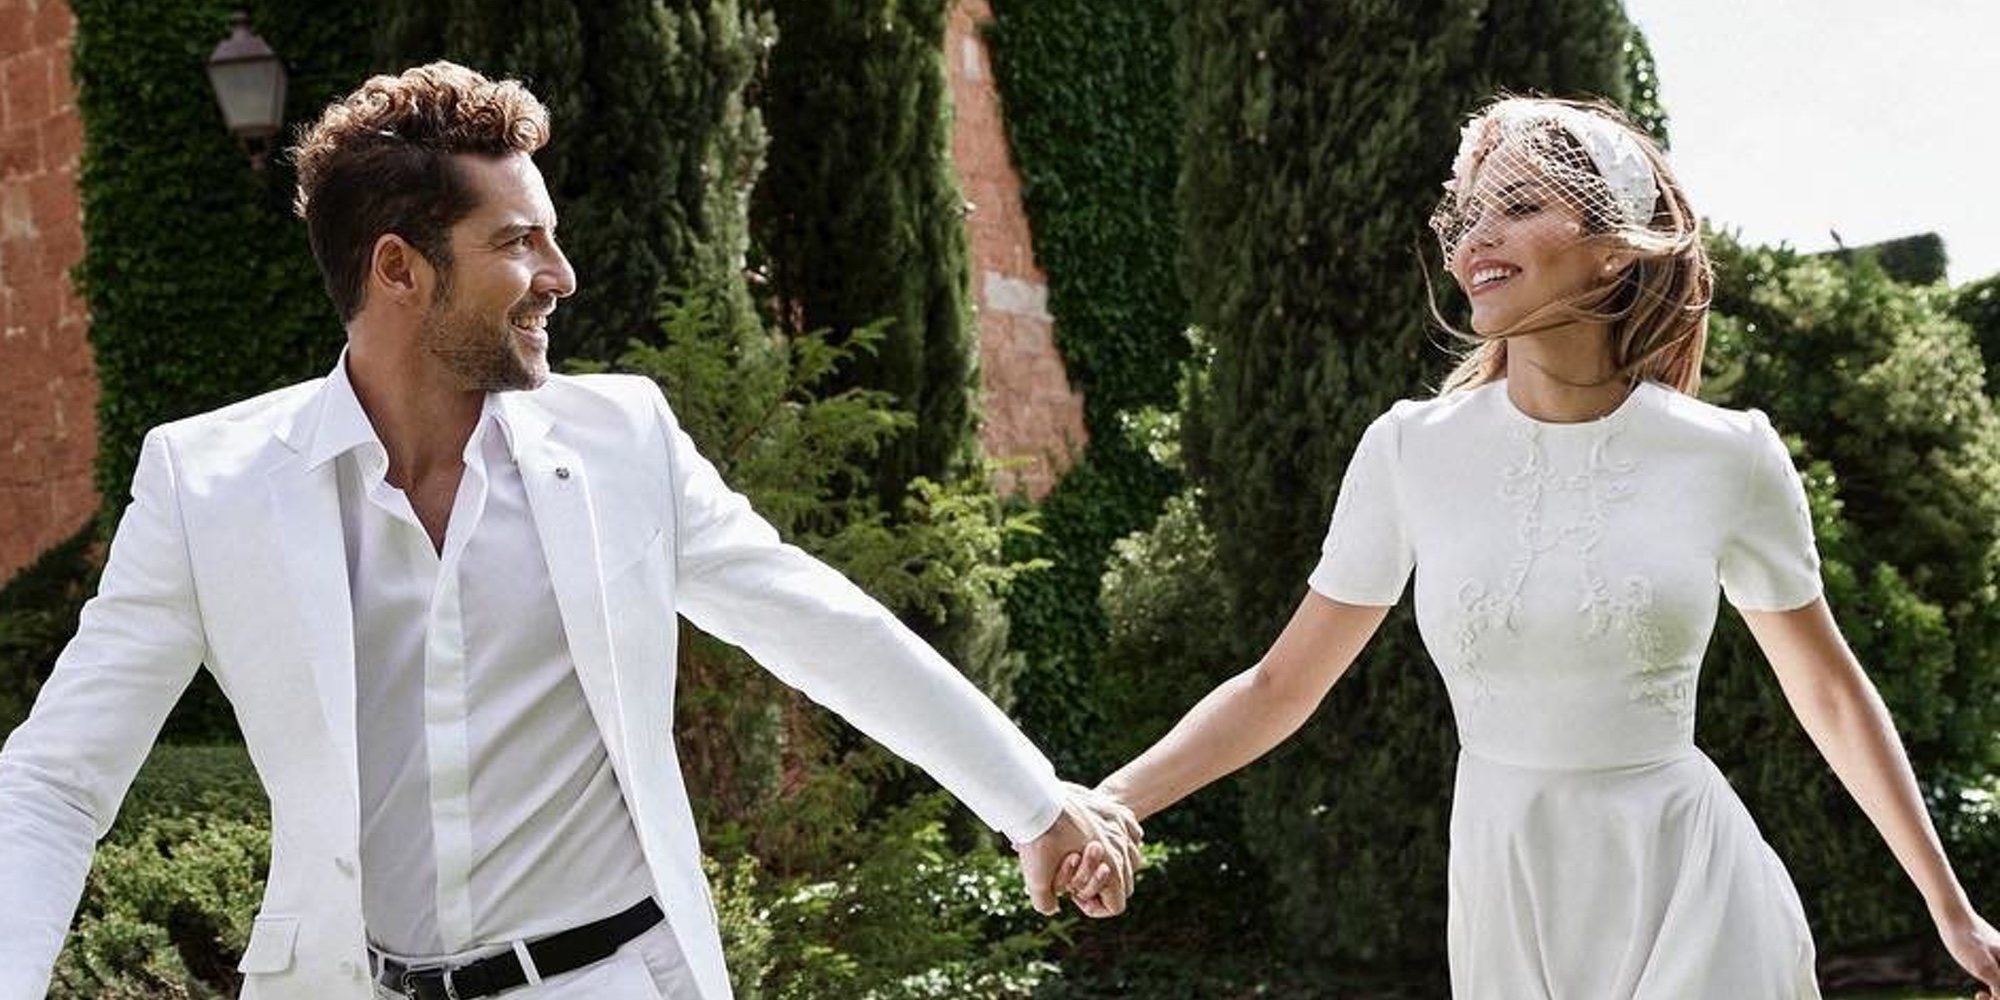 David Bisbal y Rosanna Zanetti celebran su primer año casados: "Contigo solo existe La Paz"